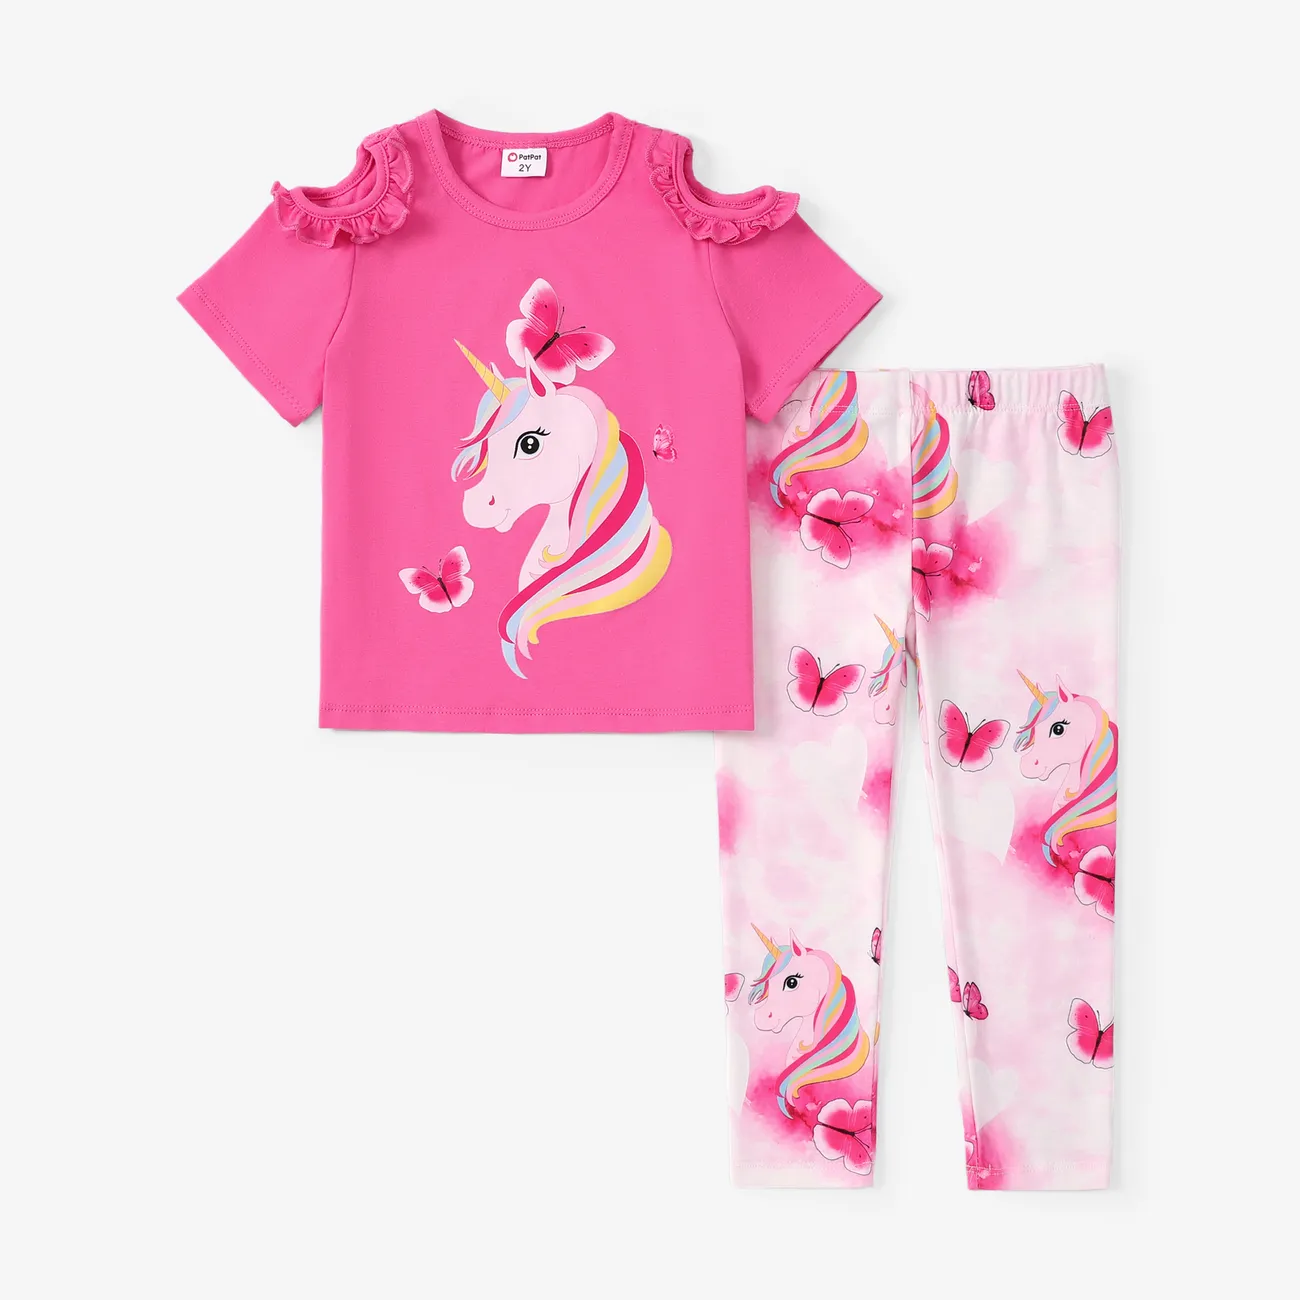 Toddler/Kid Girl 2pcs Sweet Unicorn Print Ruffled Tee and Leggings Set Dark Pink big image 1